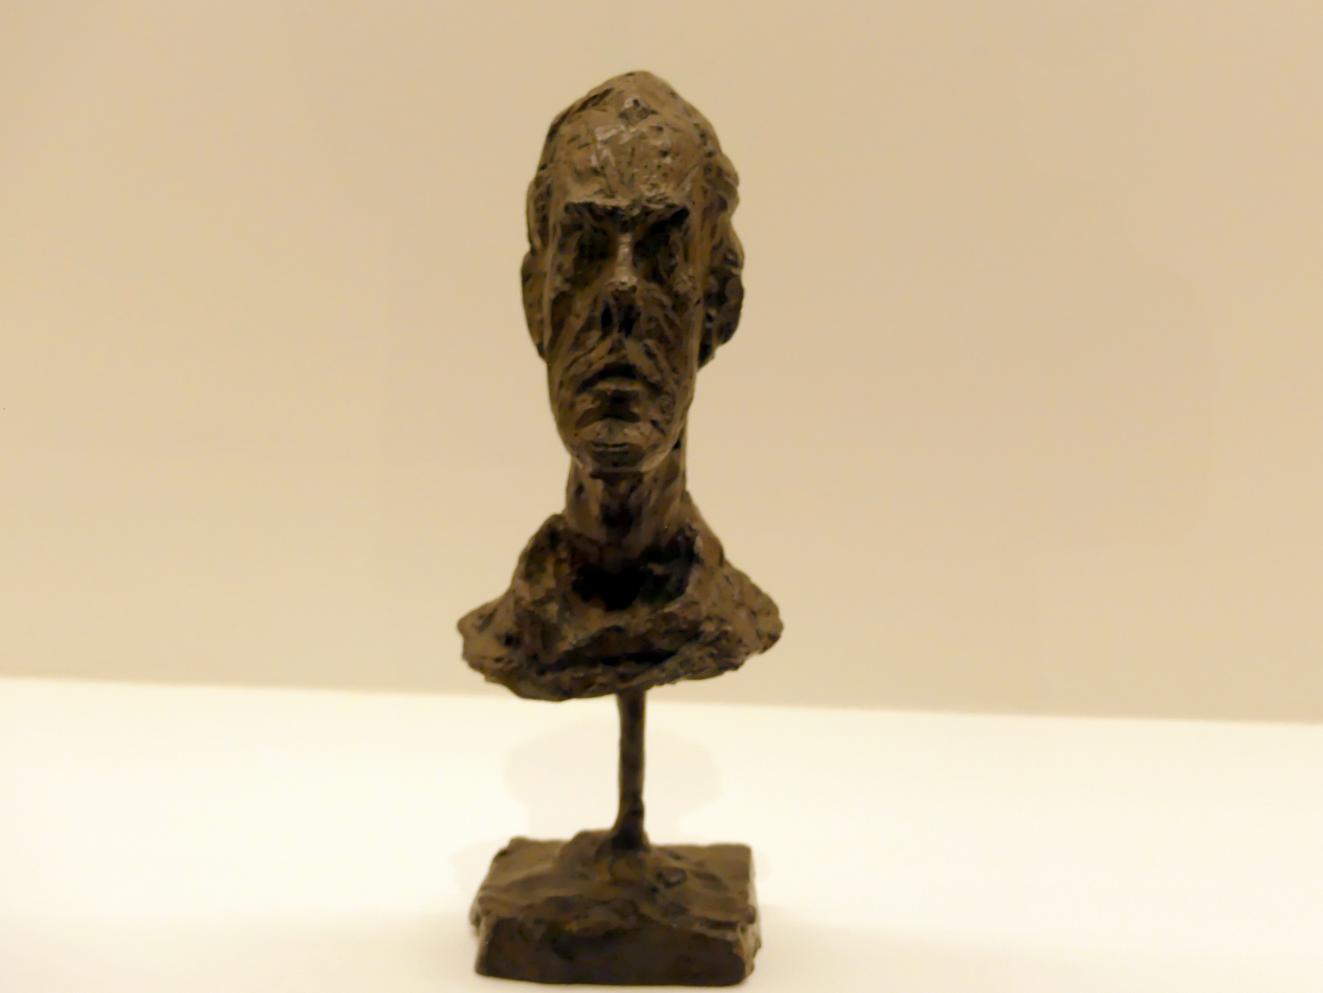 Alberto Giacometti (1914–1965), Diego. Kopf mit Rollkragen, Prag, Nationalgalerie im Messepalast, Ausstellung "Alberto Giacometti" vom 18.07.-01.12.2019, Kleine Skulpturen, um 1954